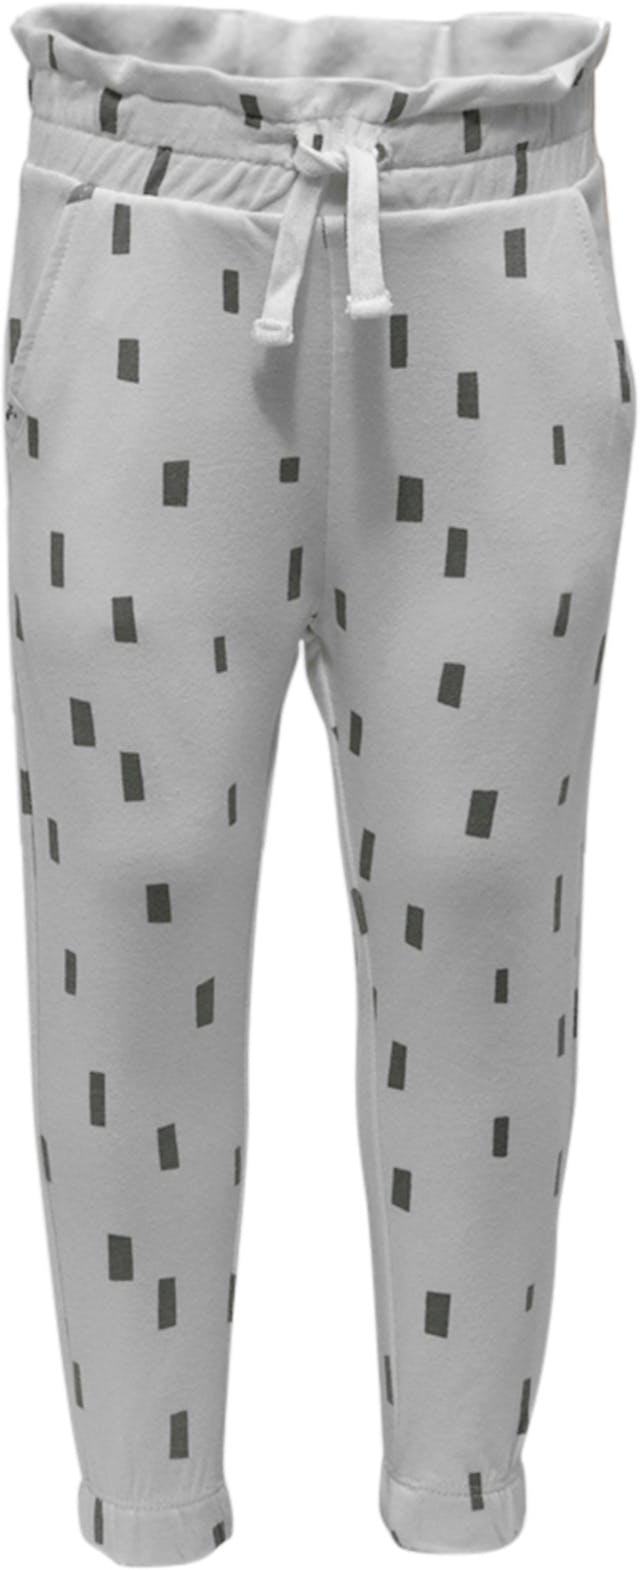 Image de produit pour Pantalon en tricot - Bébé